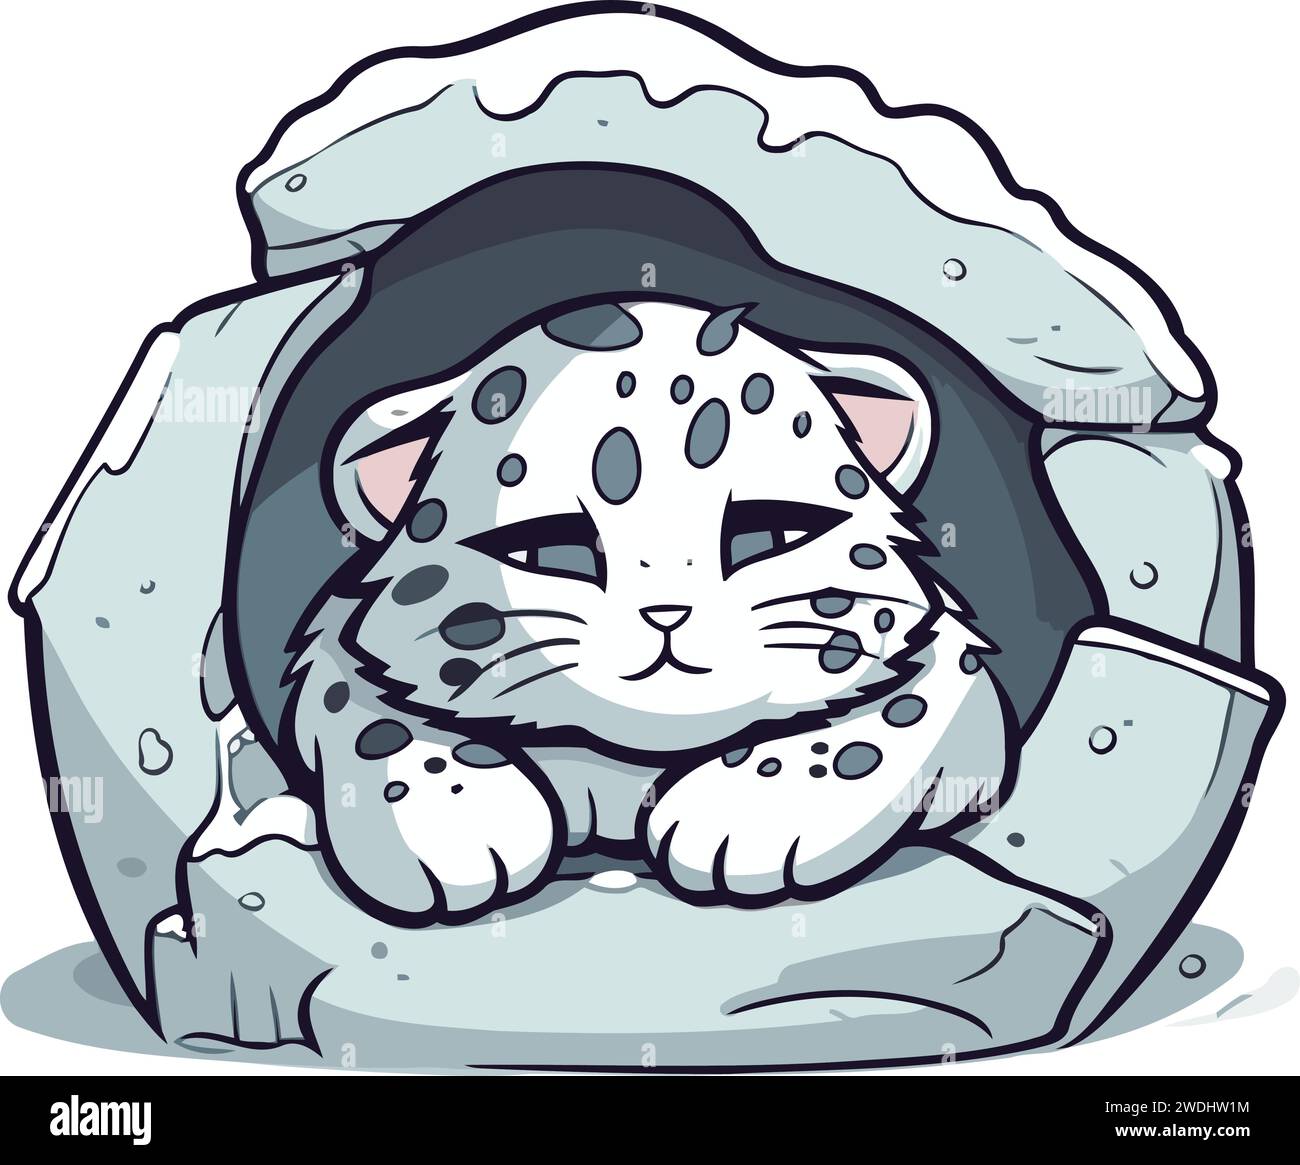 Cute cartoon snow leopard in a hole. Vector illustration. Stock Vector